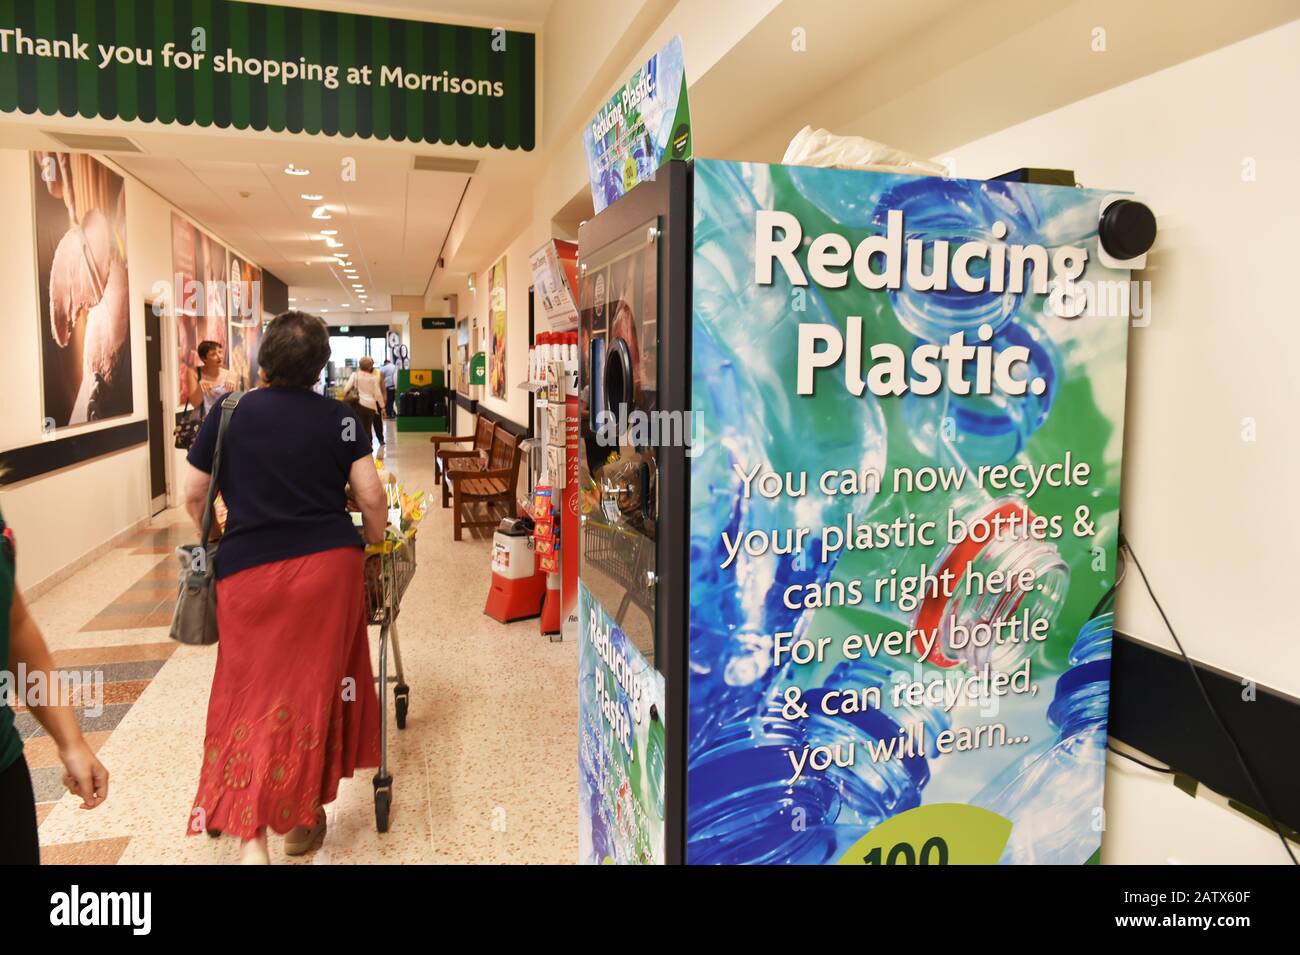 Die Supermärkte von Morrisons trimpfen einen umgekehrten Automaten im Laden, damit Kunden leere Plastikflaschen einlegen und Prämienpunkte erhalten. Stockfoto